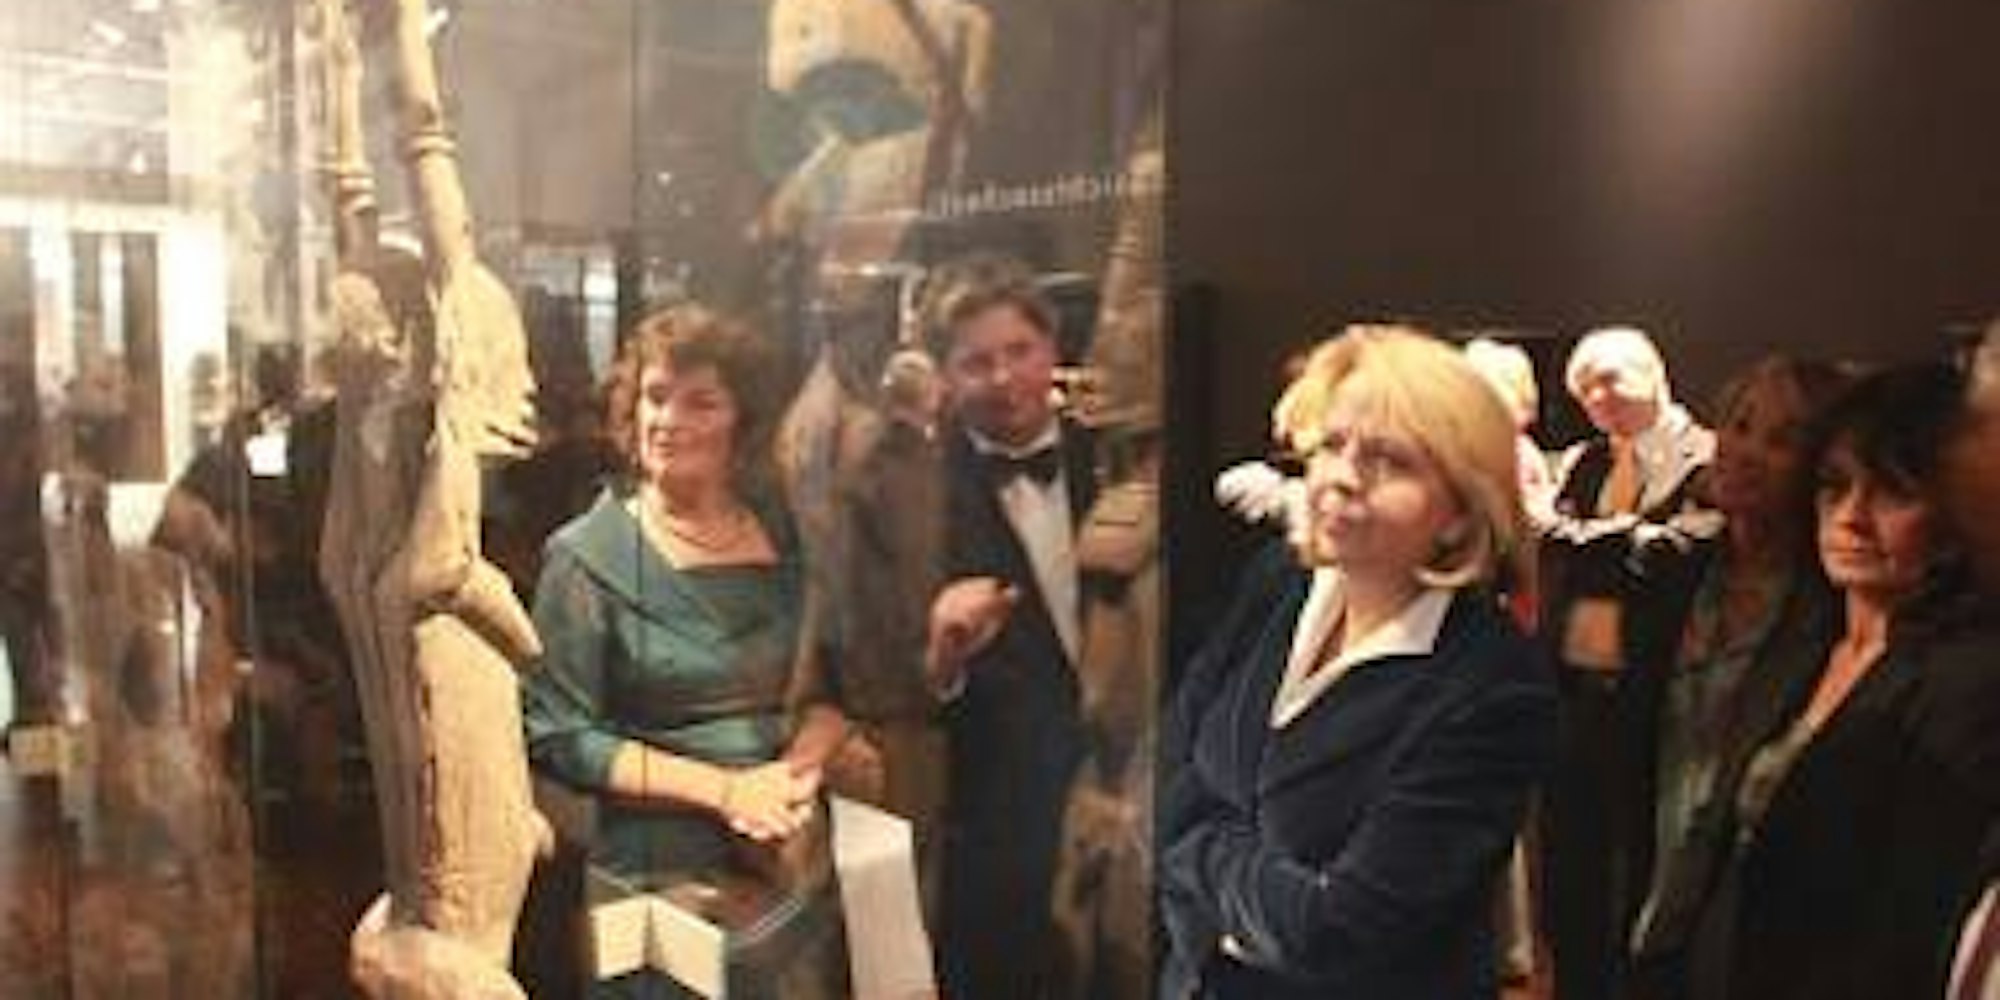 Mit einem Festakt ist am Freitagabend der neue KölnerMuseumskomplex in der Innenstadt eröffnet worden. Beim Festakt war auch NRW-Ministerpräsidentin Hannelore Kraft dabei, die hier ein Austellungsstück besichtigt. (Bild: Grönert)